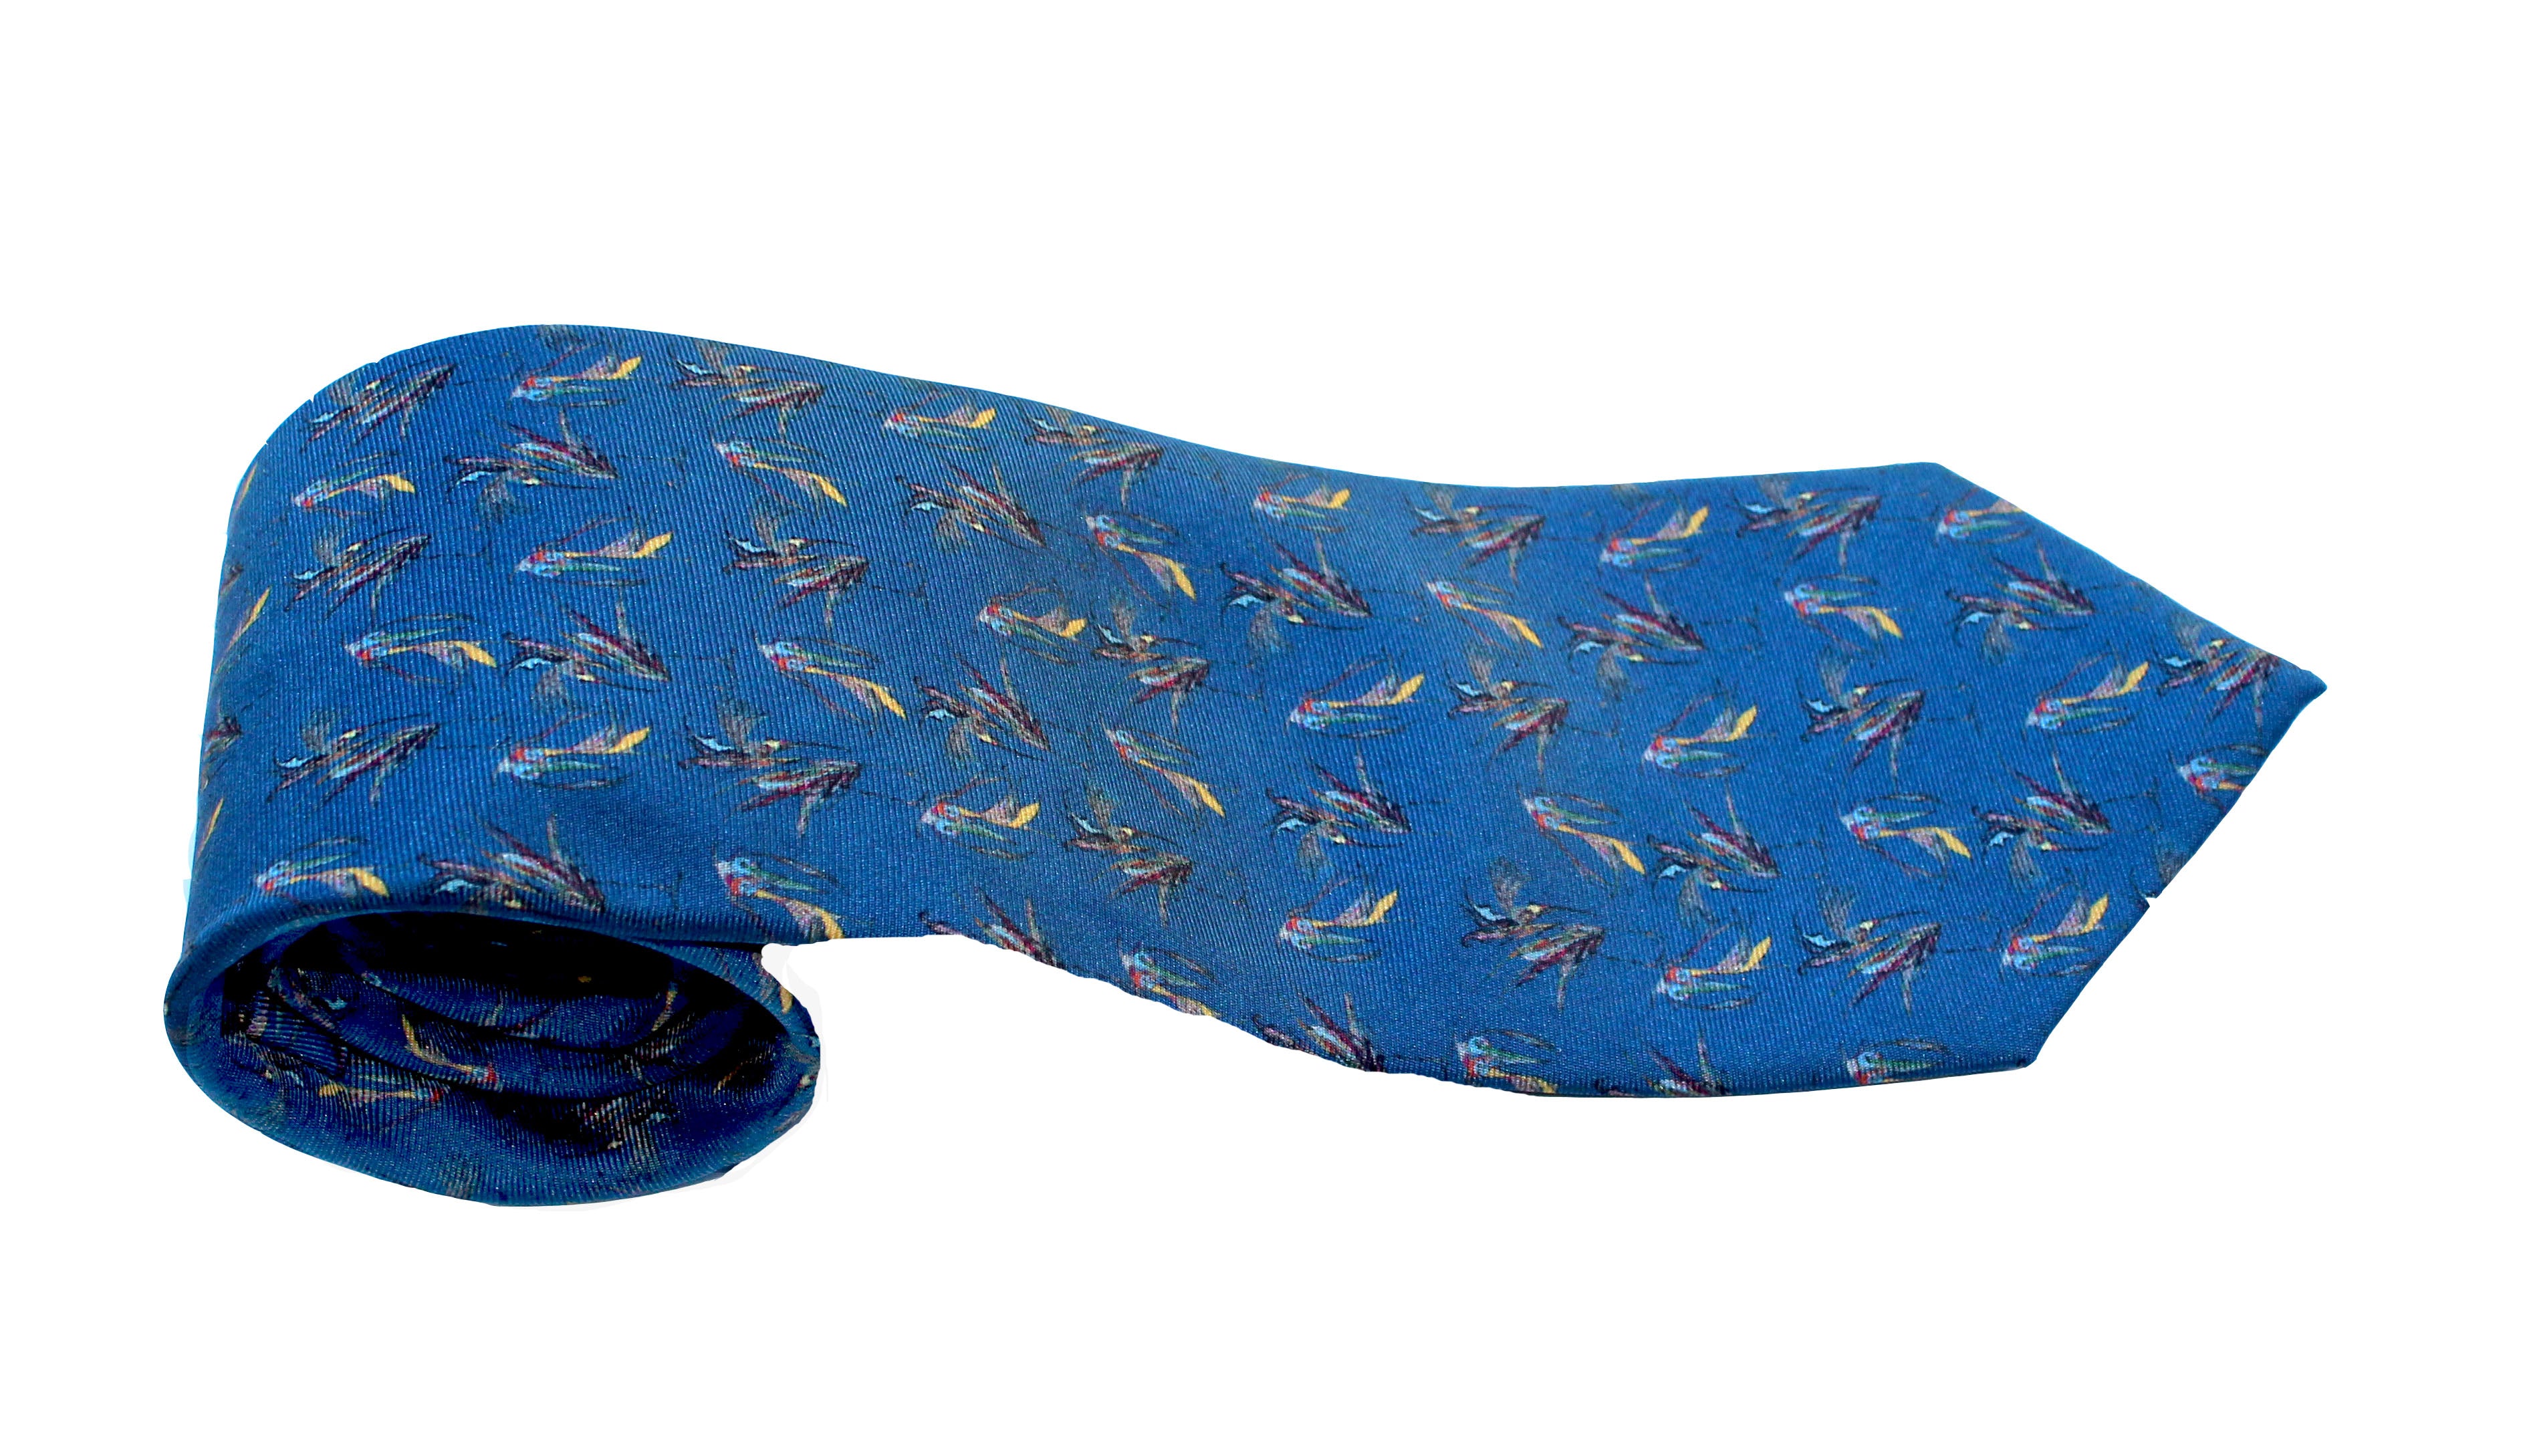 100% Silk Twill Tie in Navy Birds Pattern